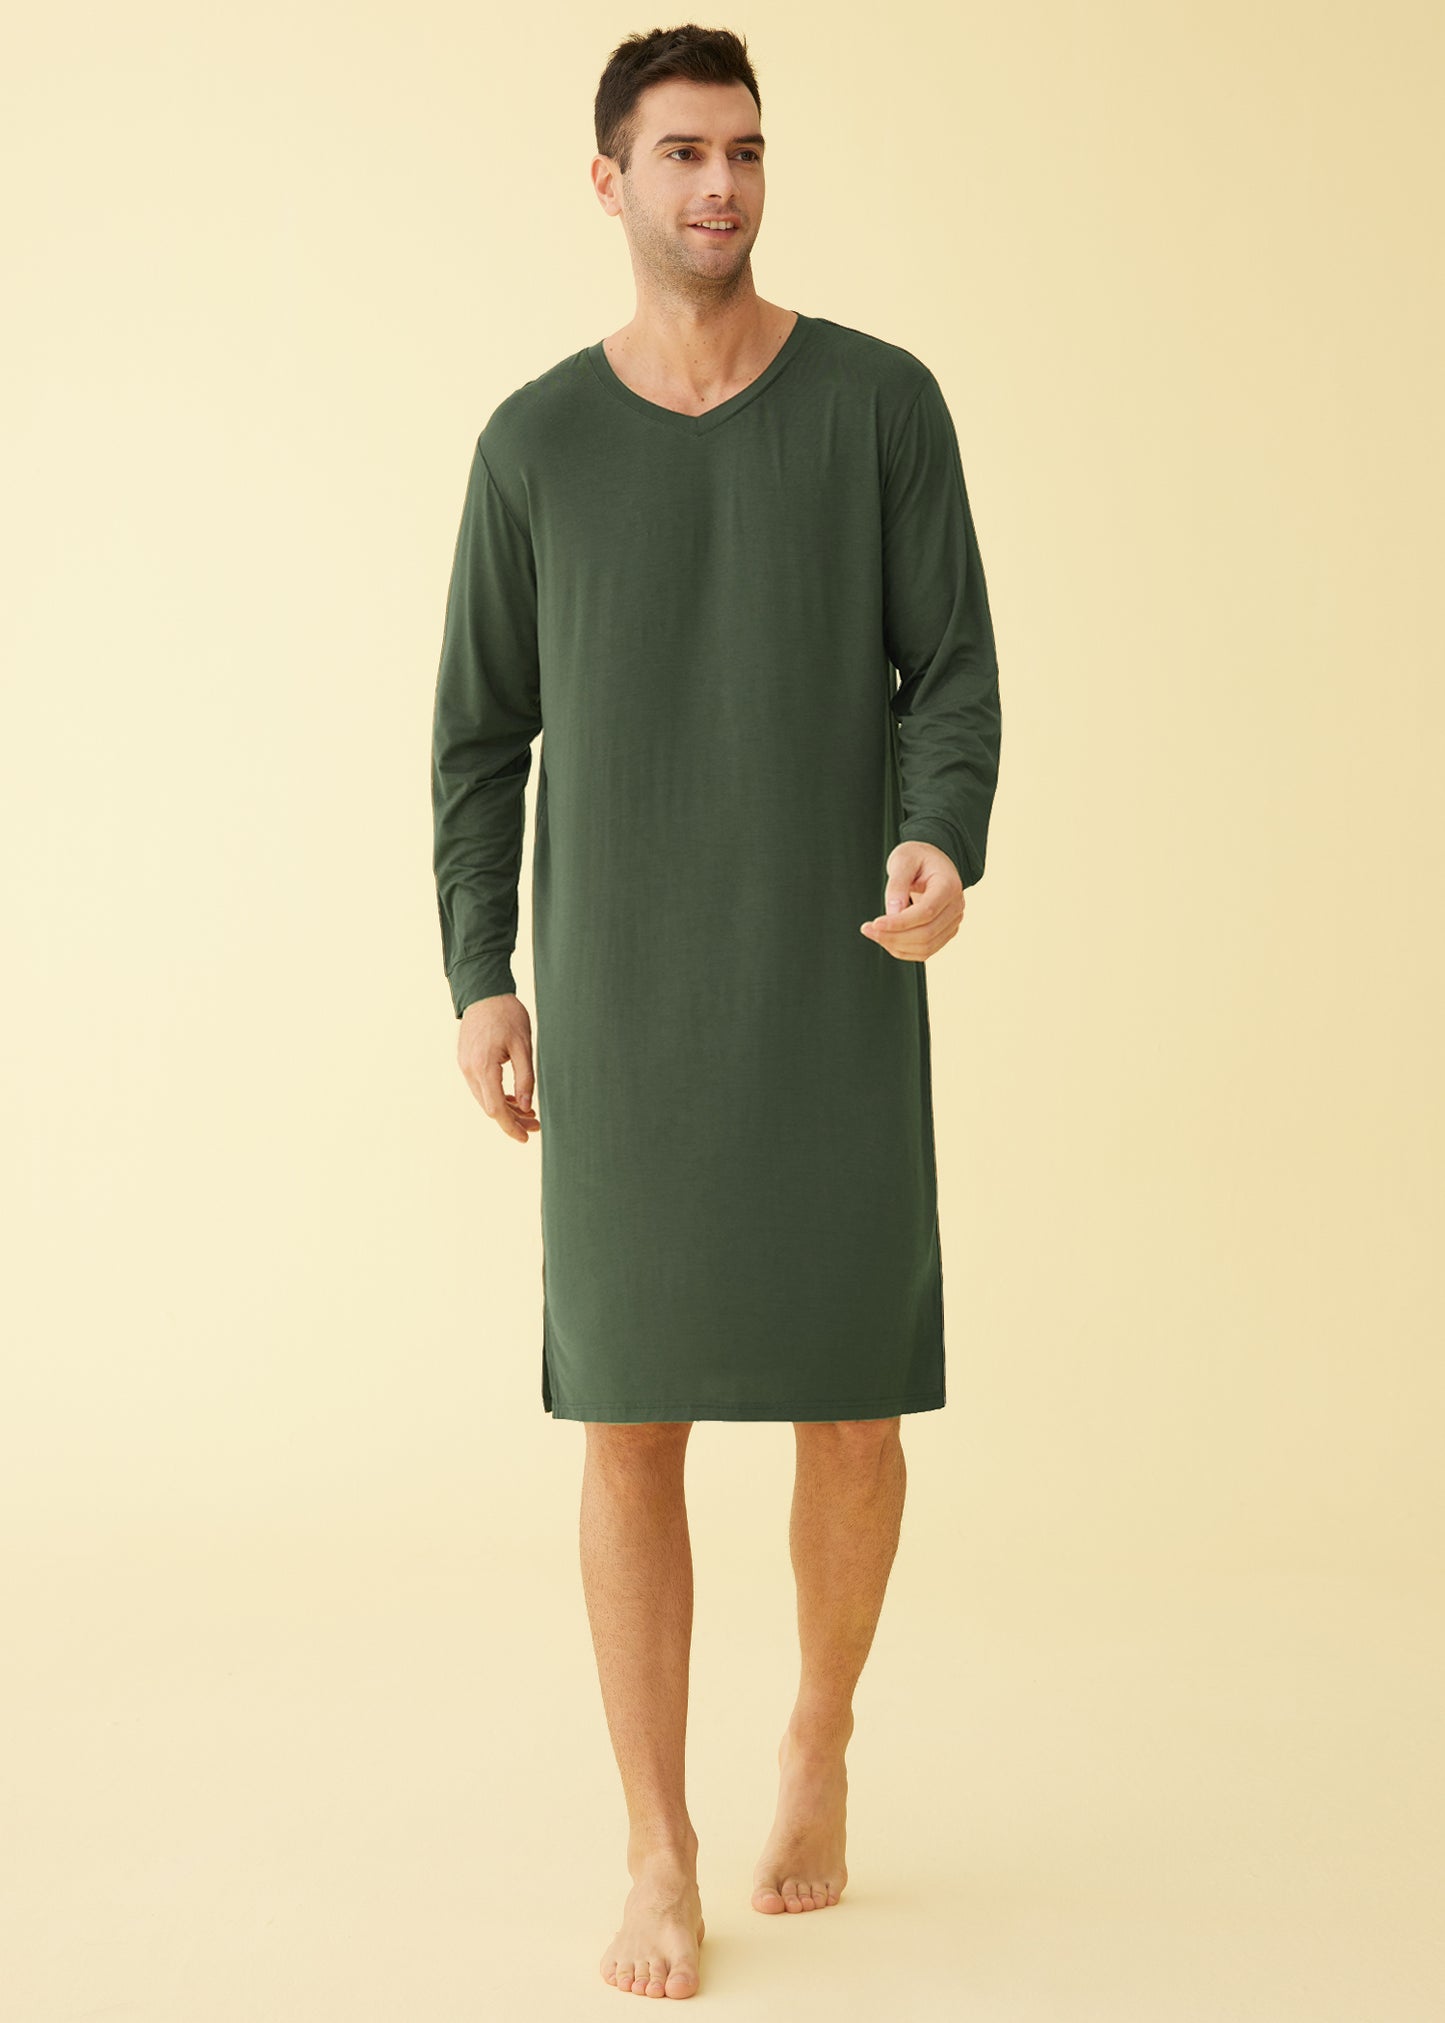 Men's V Neck Bamboo Viscose Nightshirt Long Sleeves Sleep Shirt